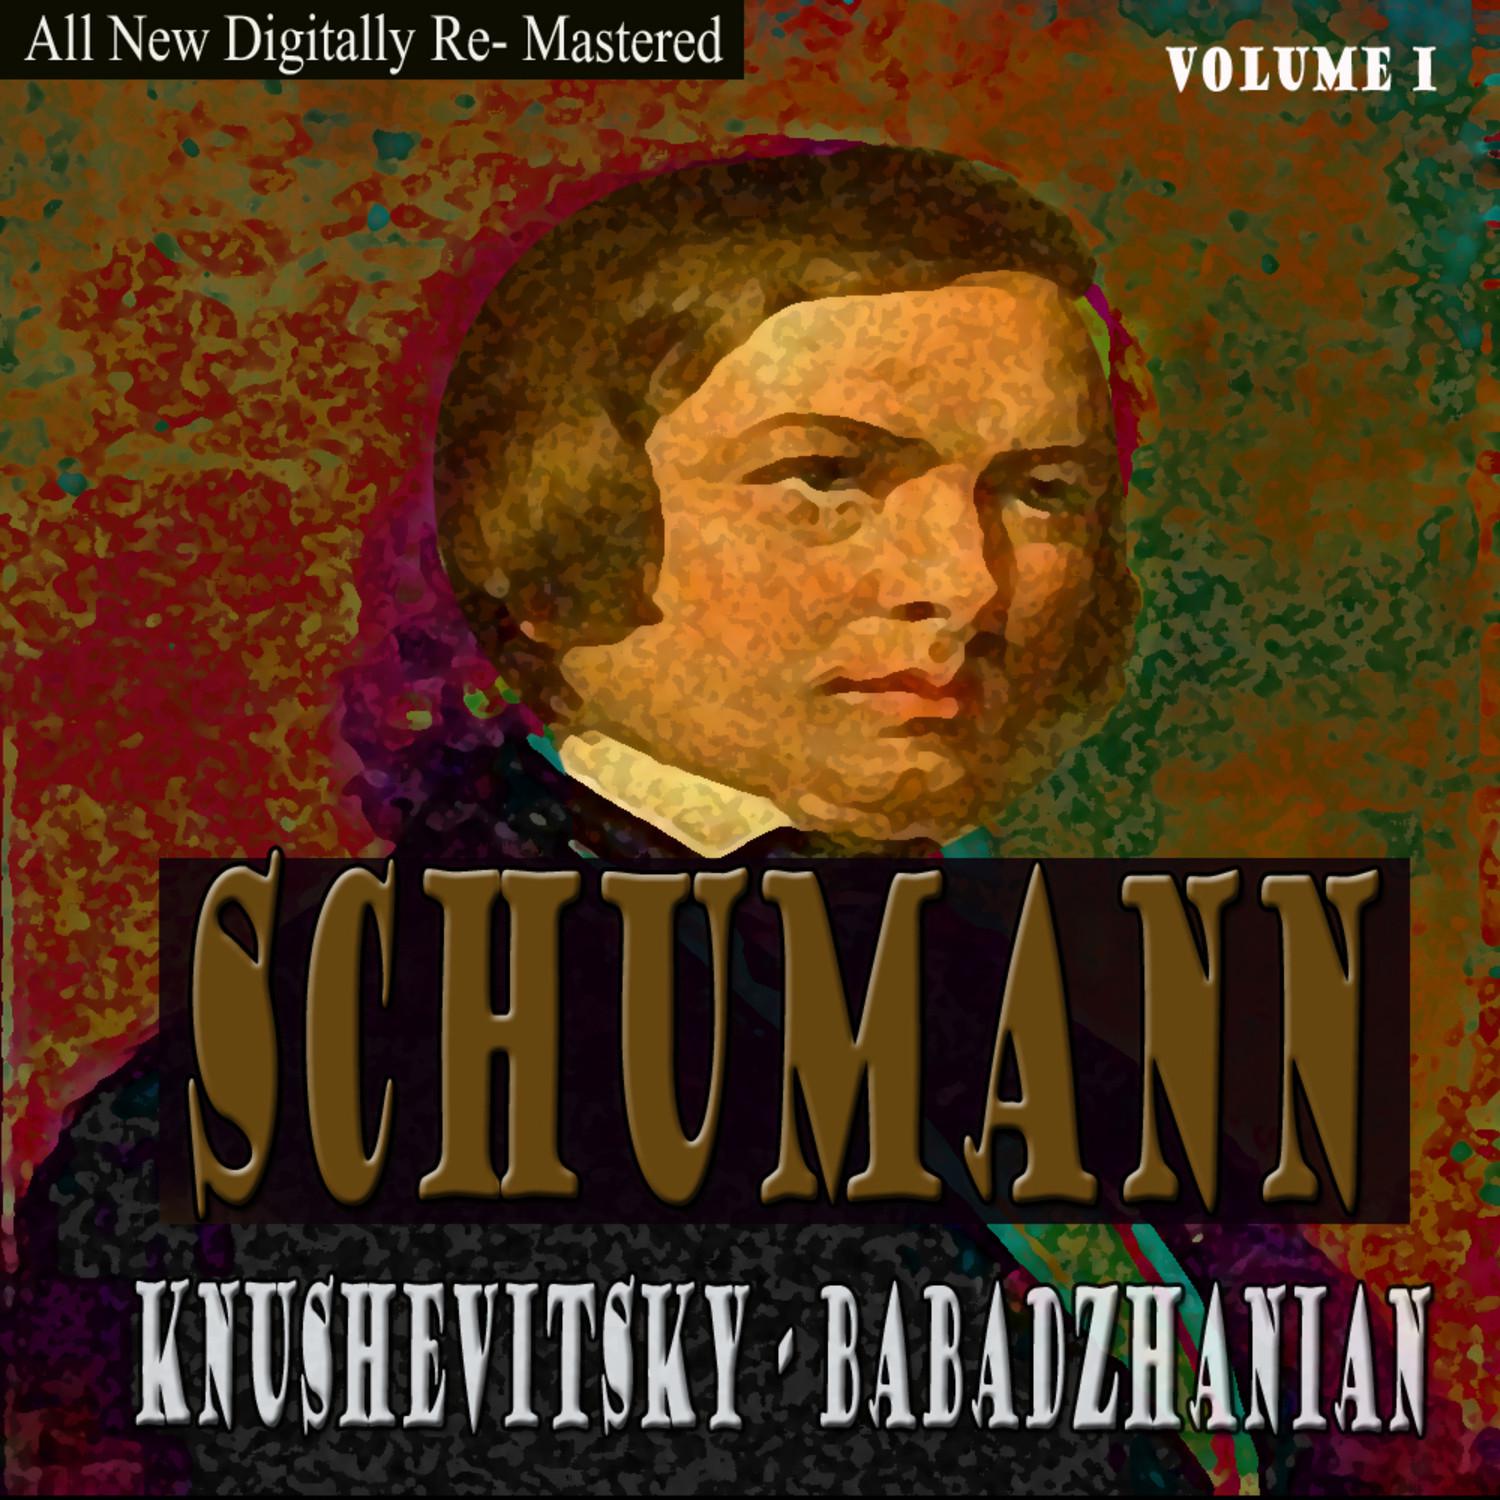 Schumann, Babadzhania - Knushevitsky Volume 1